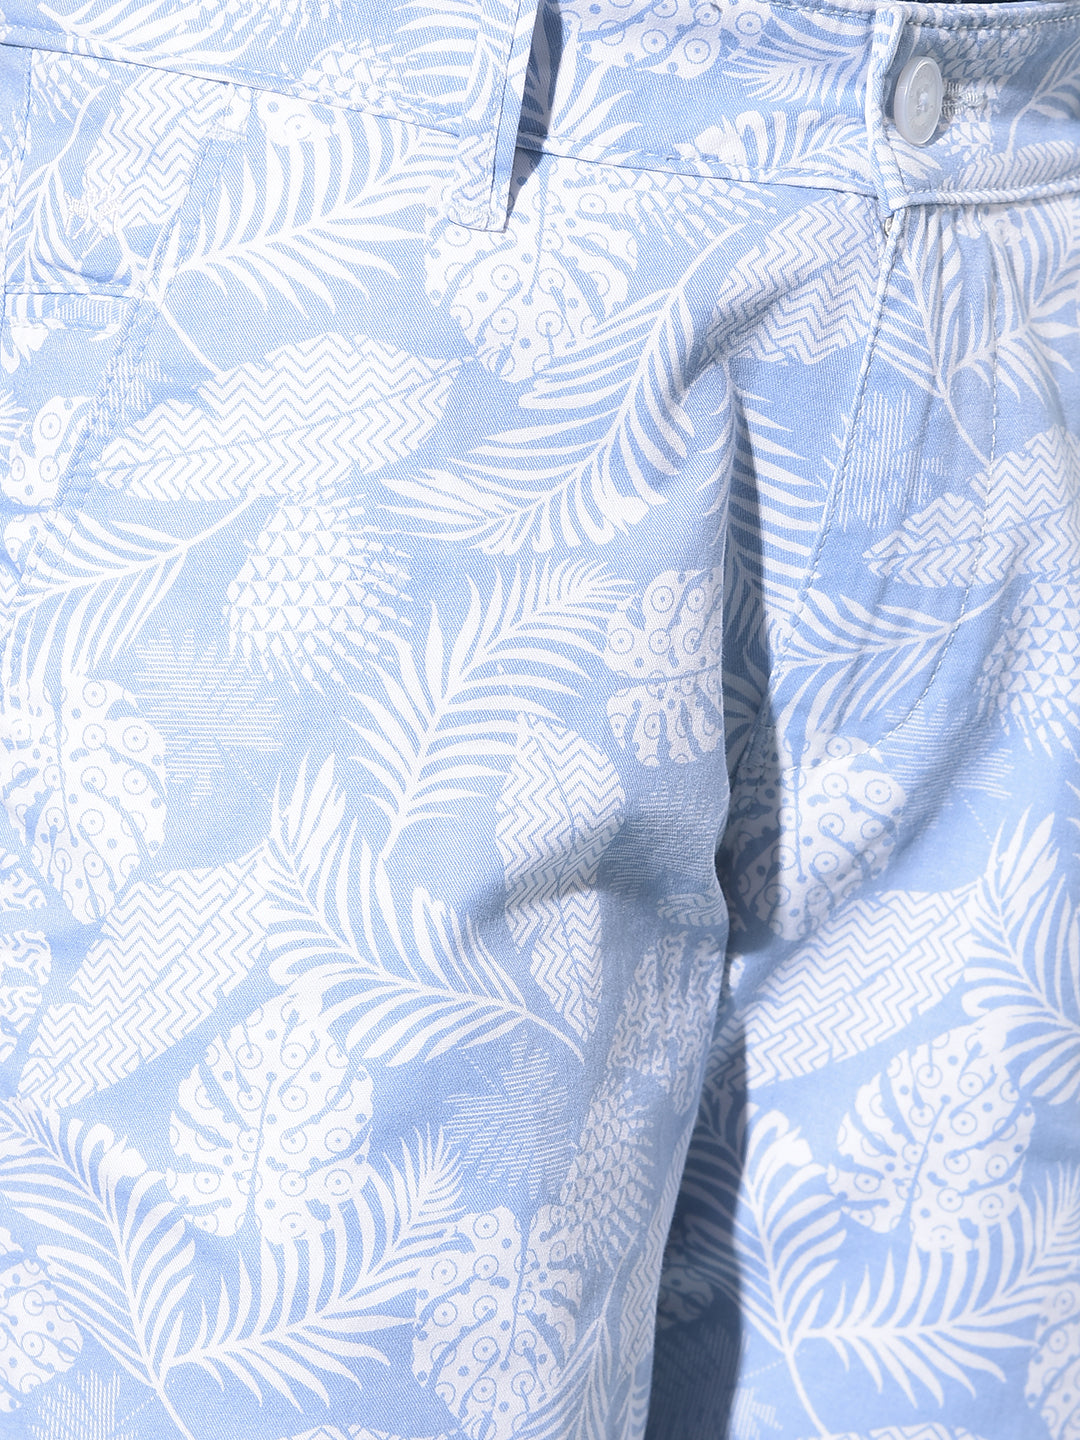 Blue Floral Print 100% Cotton Shorts-Boys Shorts-Crimsoune Club